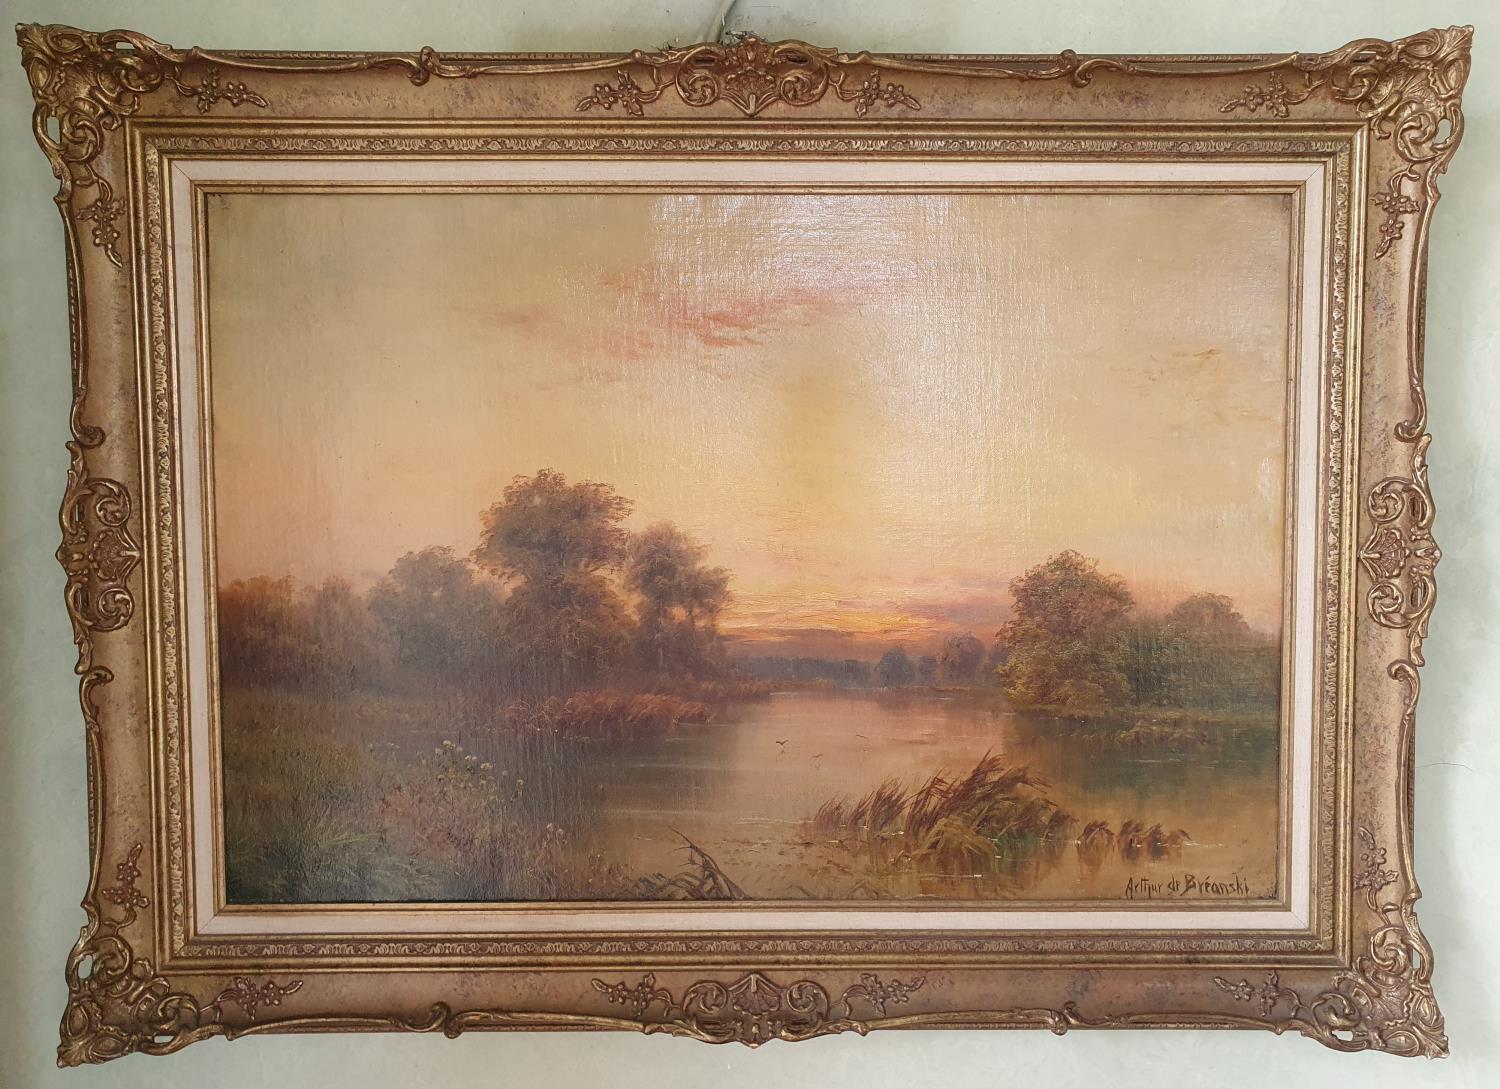 Arthur De Breanski. An Oil on Canvas of a sunset river landscape. Signed LR. 51 x 76cm approx.